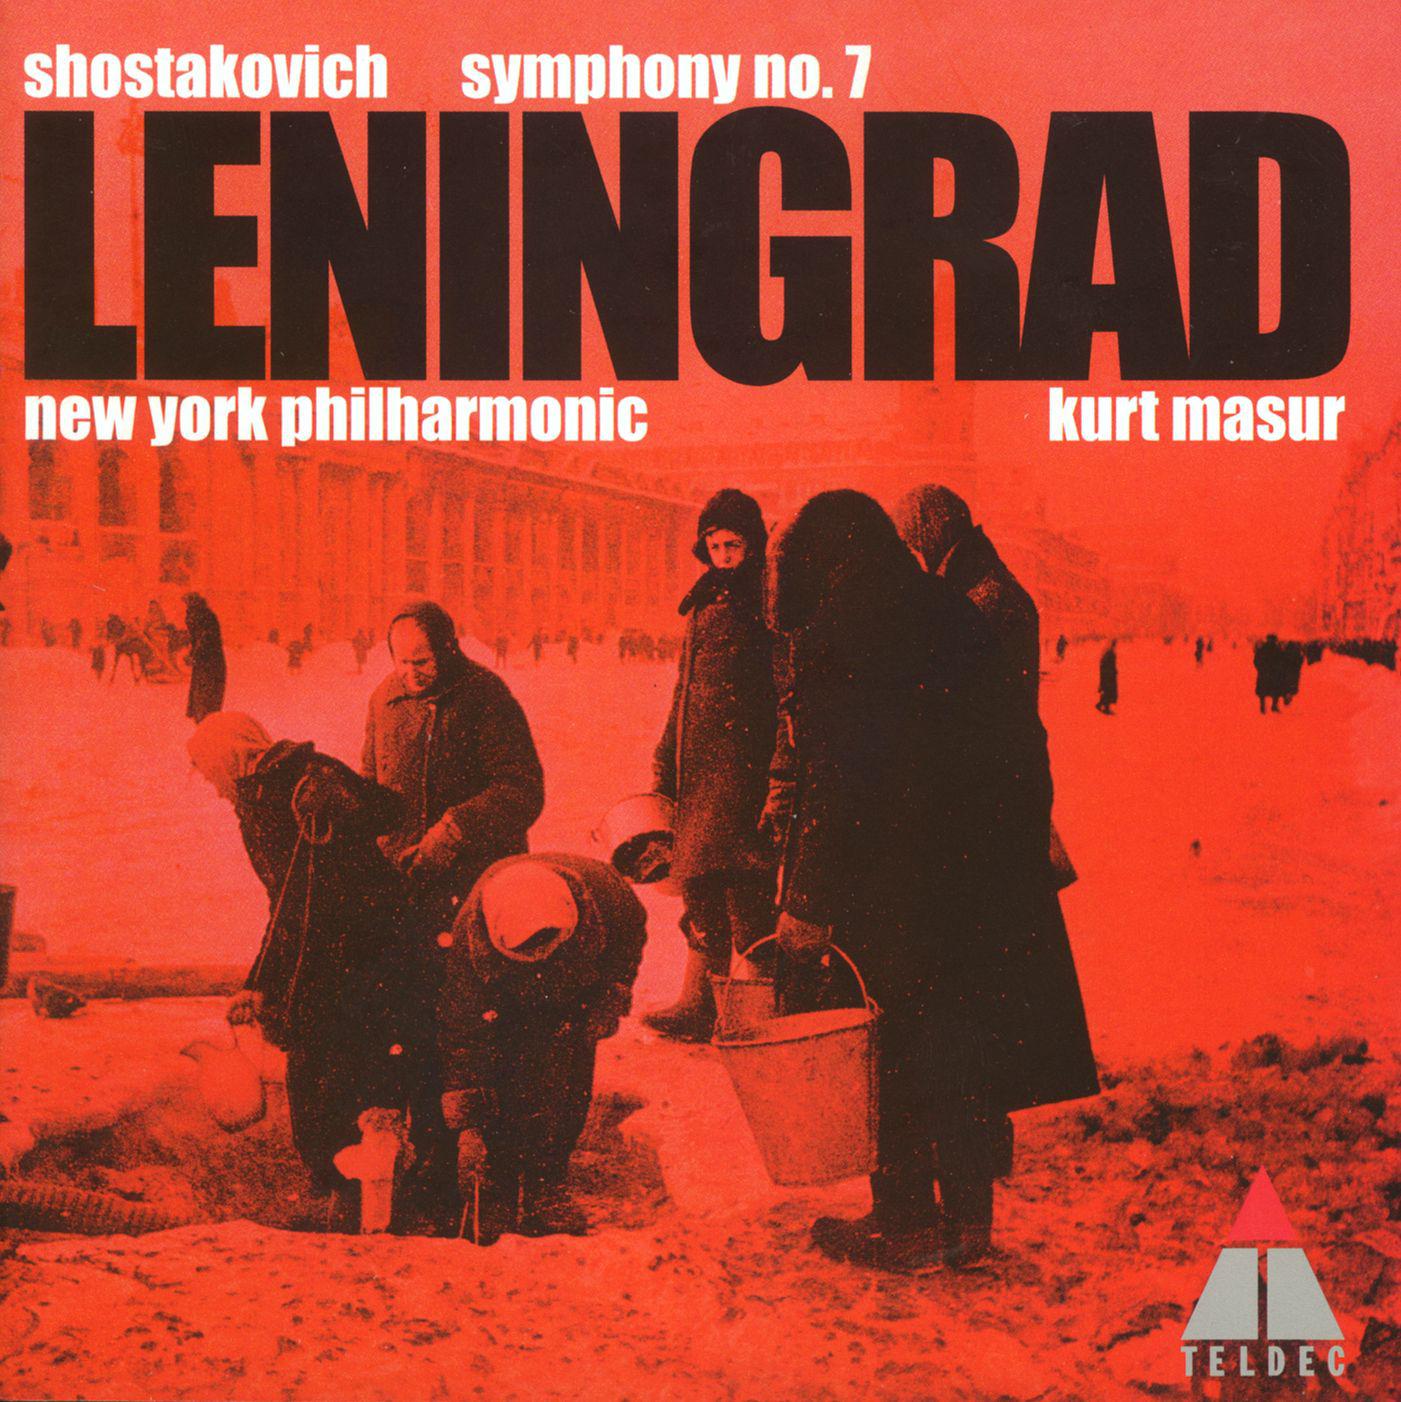 Shostakovich : Symphony No.7 in C major Op.60, 'Leningrad' : IV Allegro non troppo